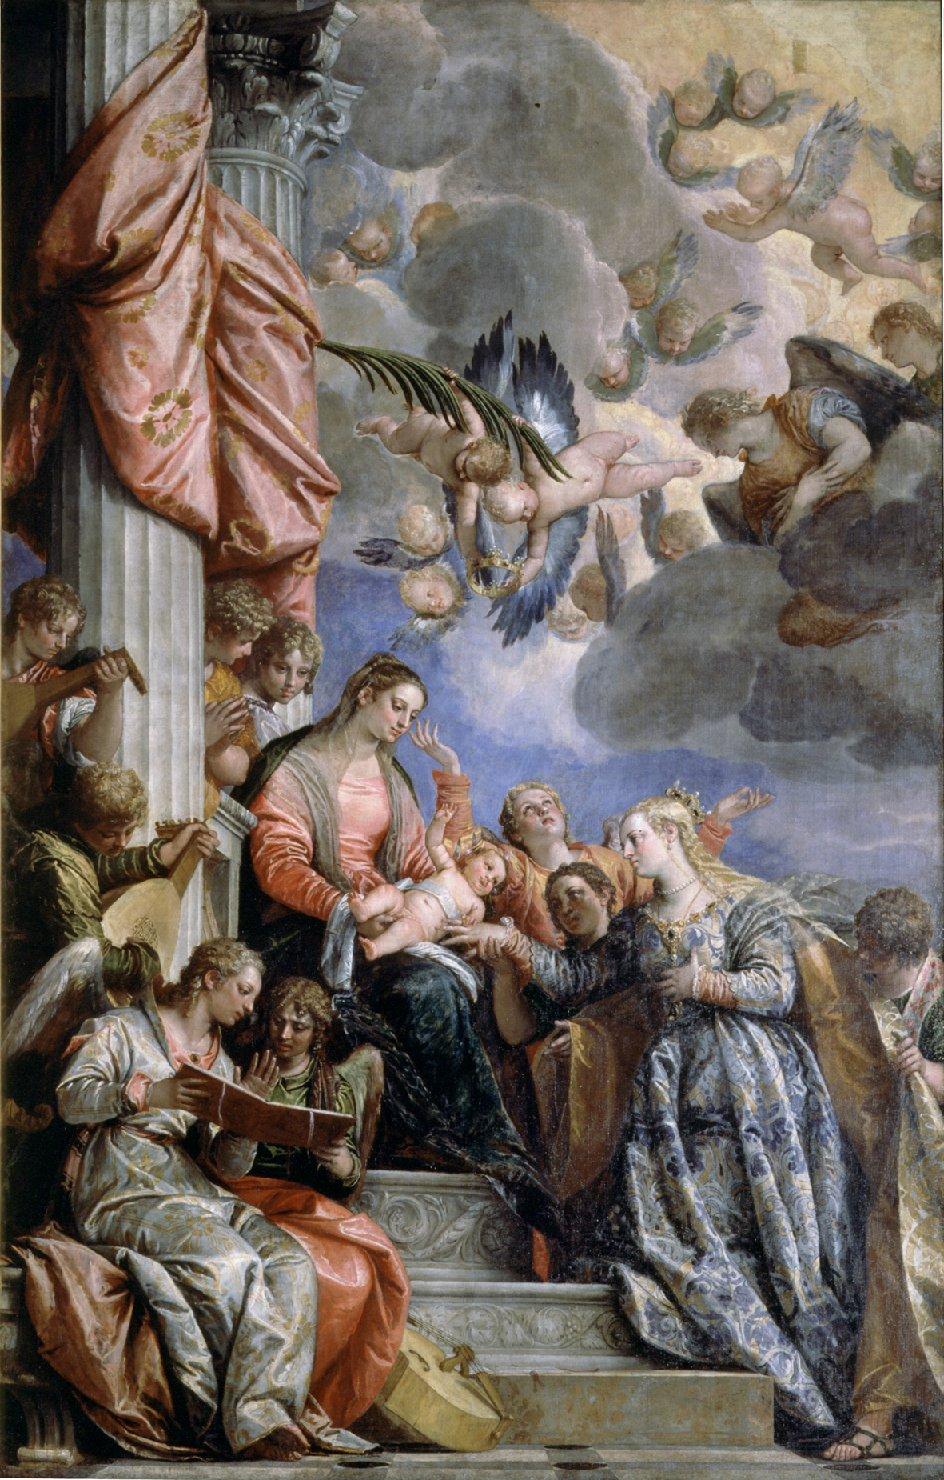 Lo sposalizio di S. Caterina, matrimonio mistico di Santa Caterina d'Alessandria (dipinto) di Caliari Paolo detto Veronese (sec. XVI)